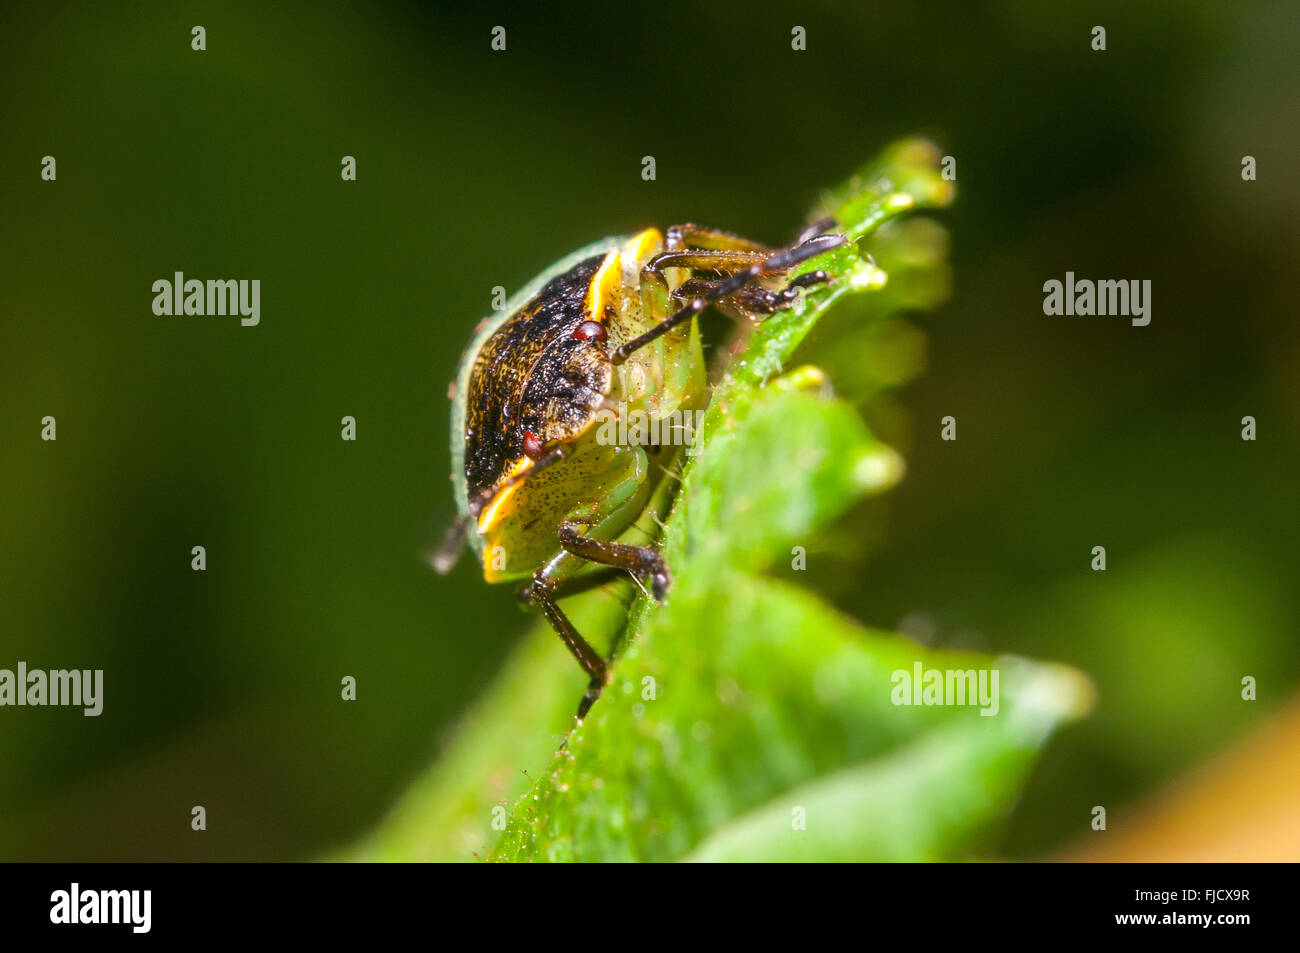 A juvenile Stinkbug (Chlorochroa sp.) on a leaf. Washington, United States. Stock Photo